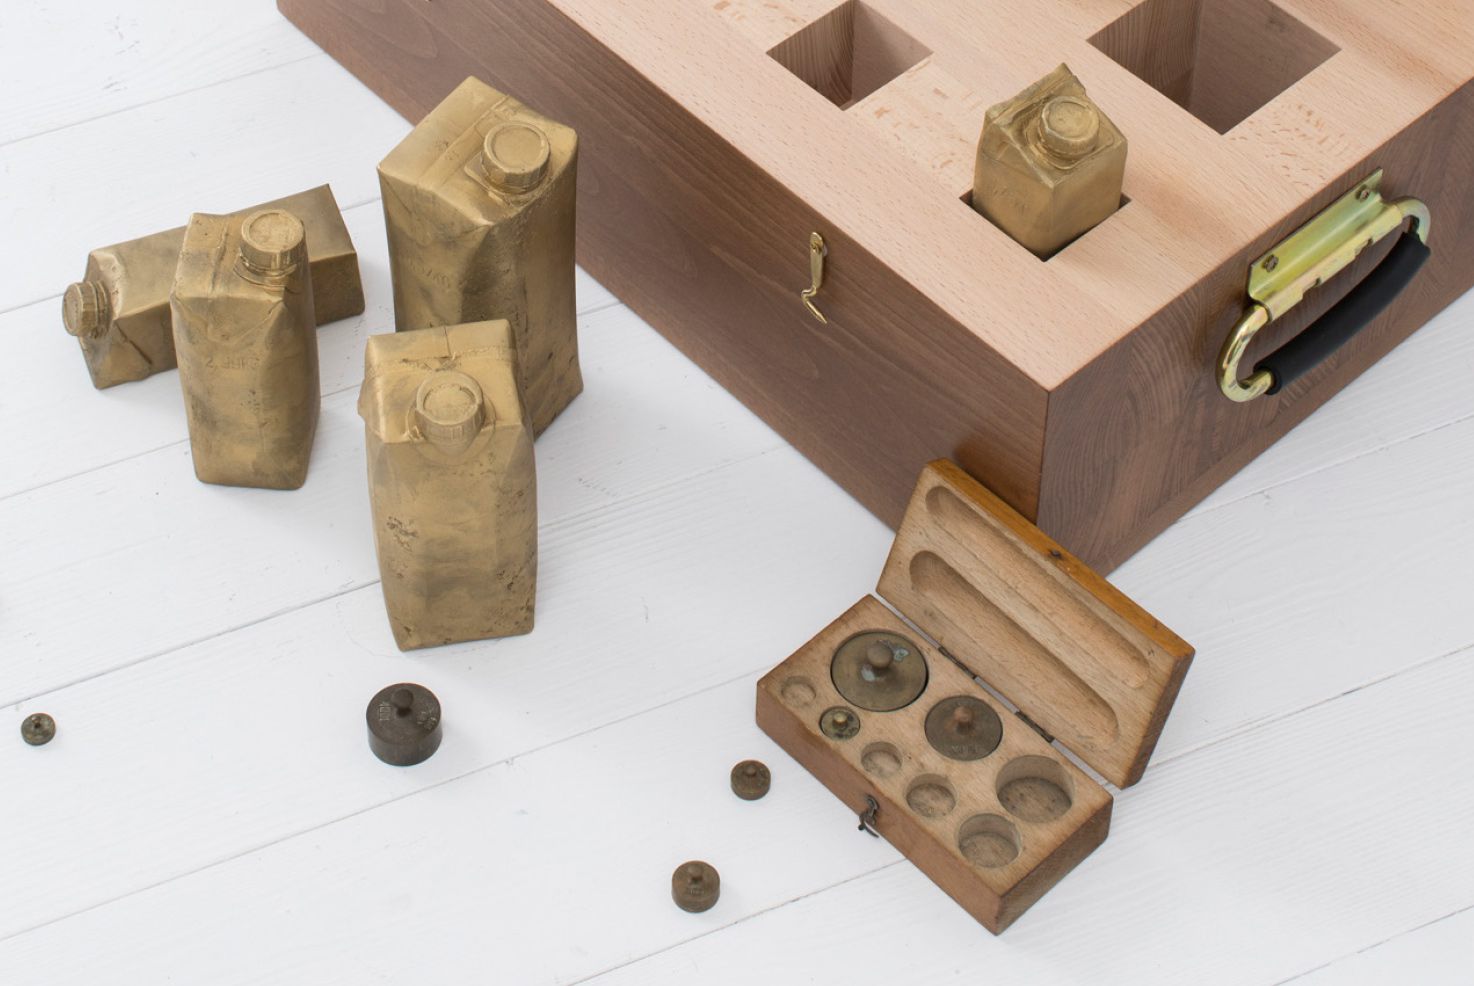 Objekte von Josephine Riemann (Detail): 8 Tetrapak-Verpackungen unterschiedlicher Größe, in Messing abgegossen in einem Vollholzkasten.  